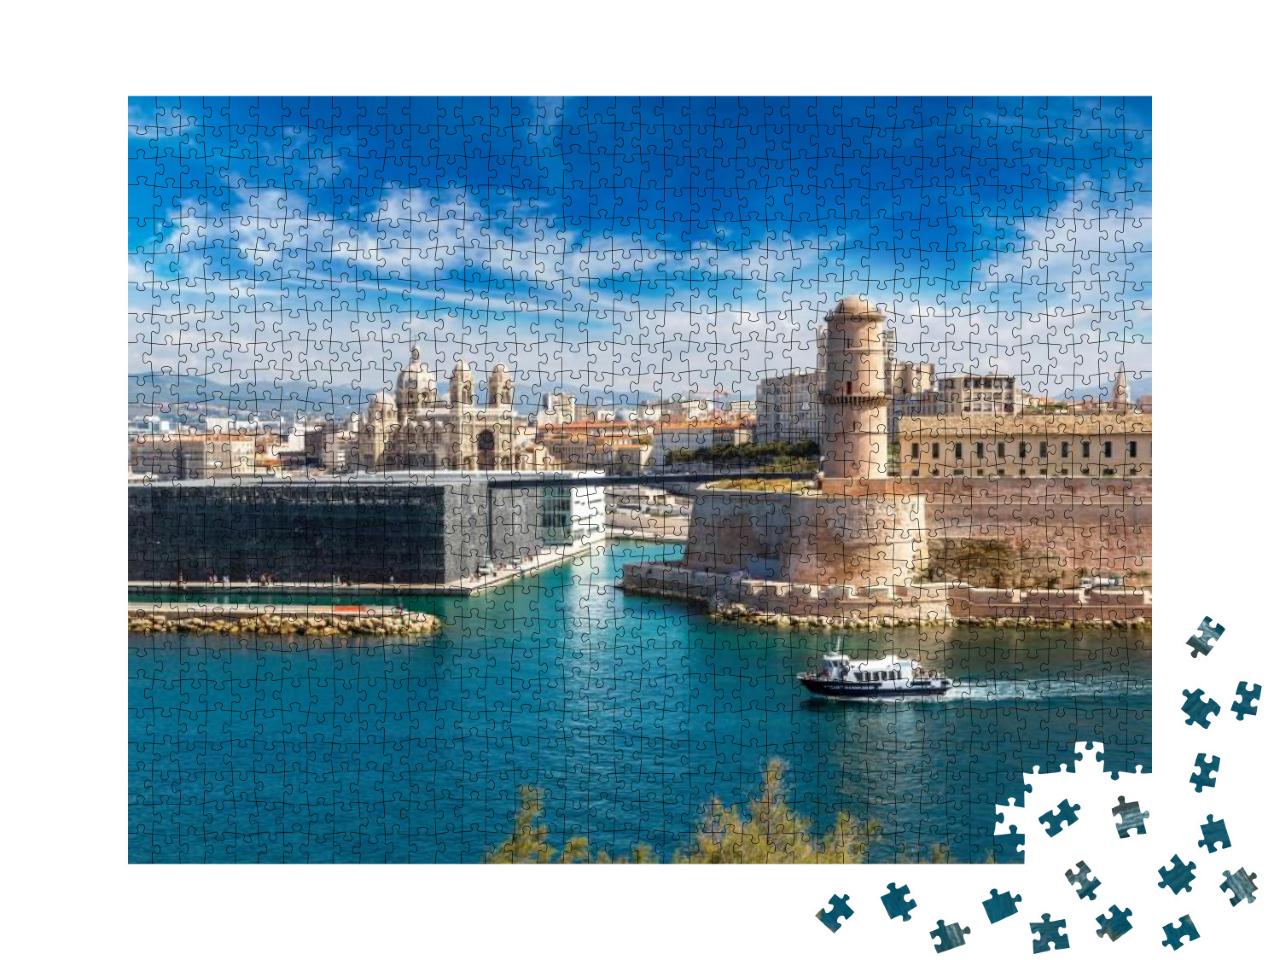 Saint Jean Castle & Cathedral De La Major & the Vieux Por... Jigsaw Puzzle with 1000 pieces